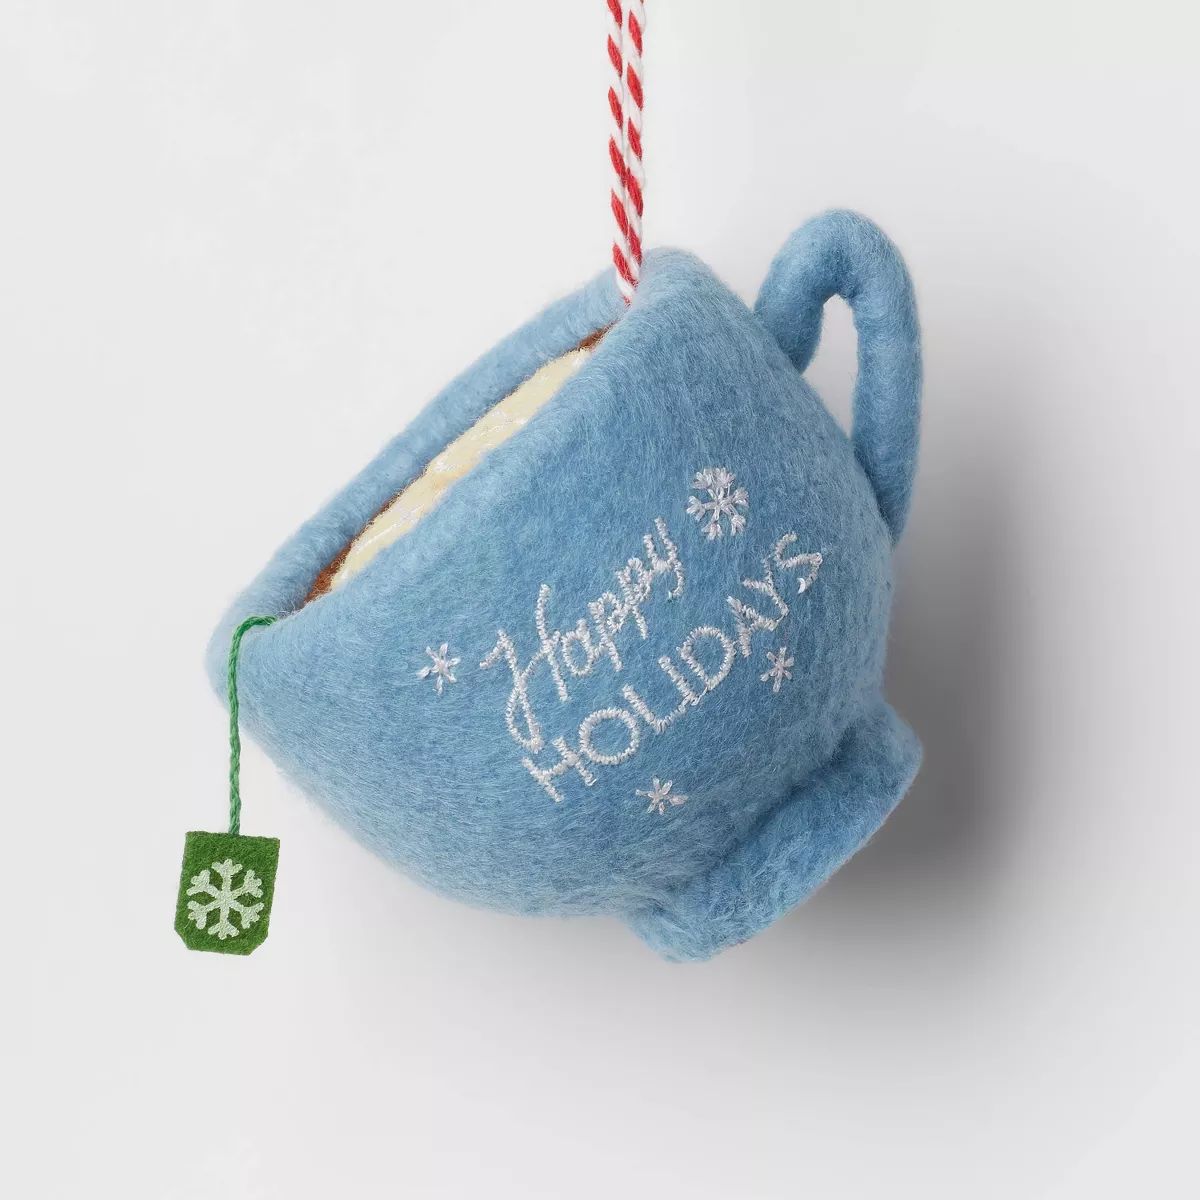 Felt 'Happy Holidays' Teacup Christmas Tree Ornament Blue - Wondershop™ | Target